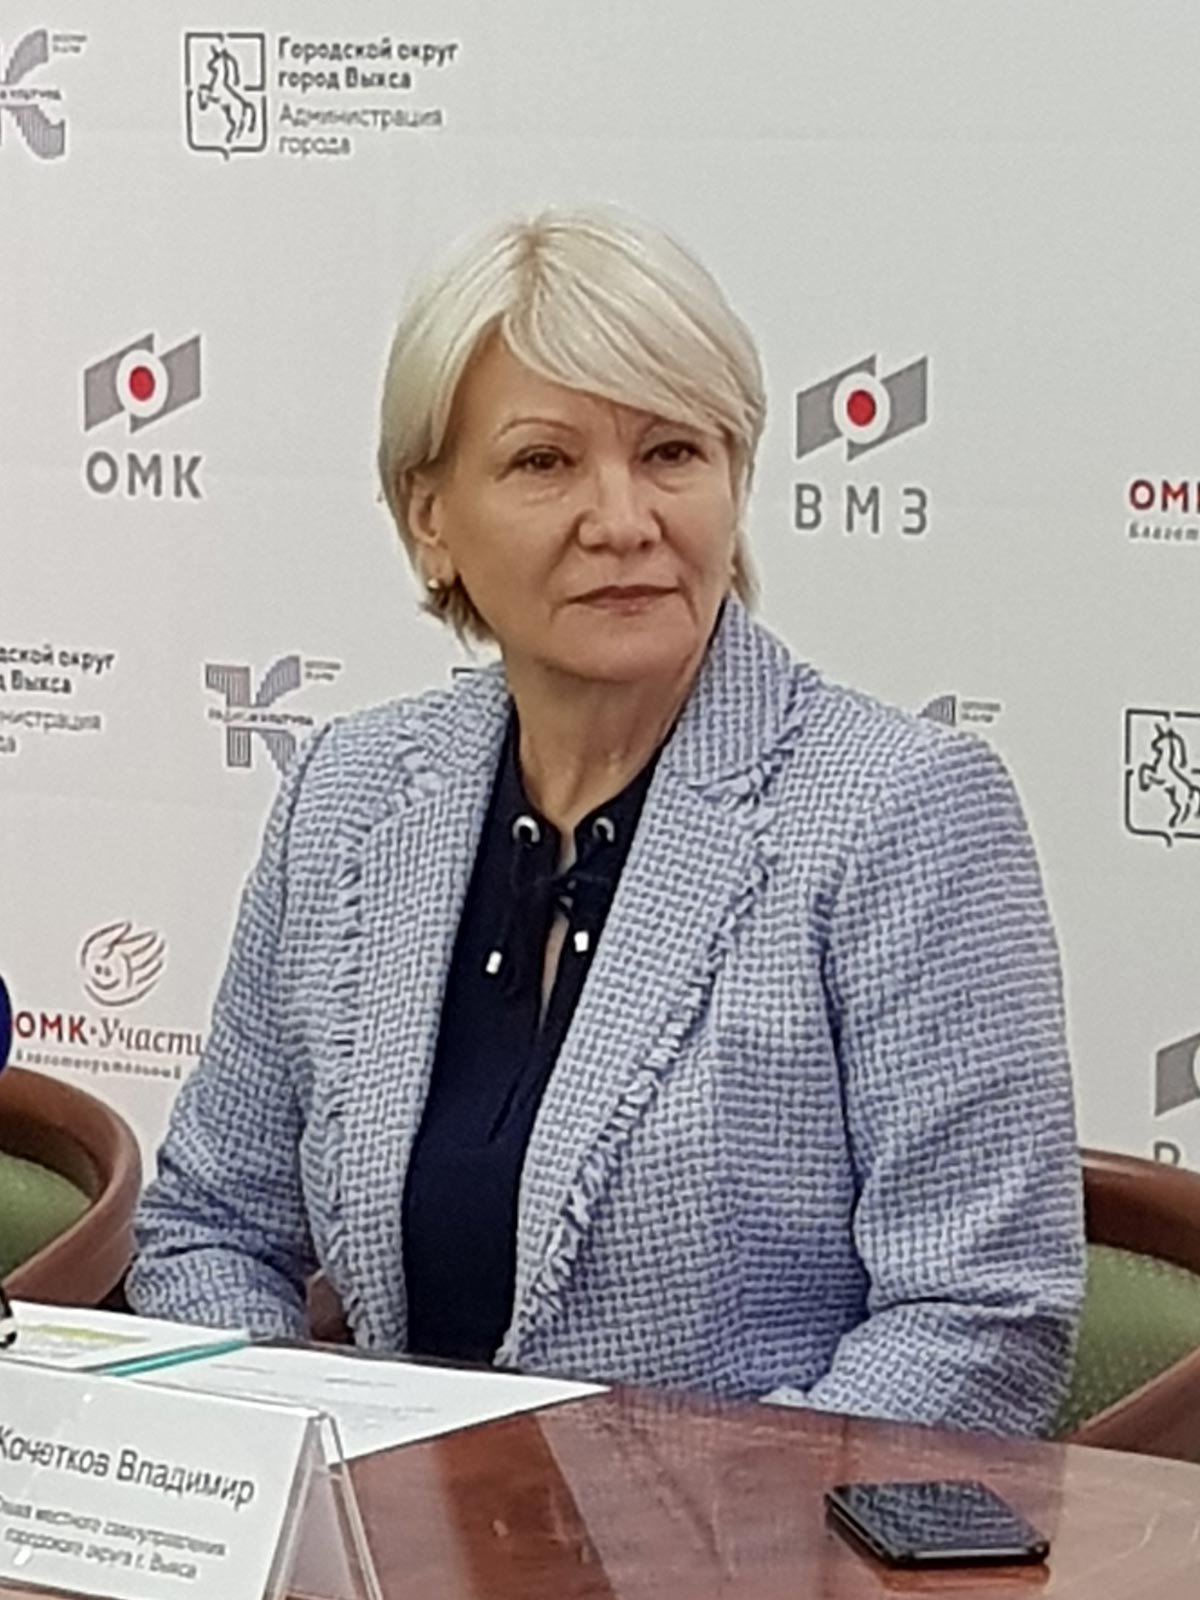 Марина Михайленко Объединённая металлургическая компания и Благотворительный фонд «ОМК-Участие» объявили о старте программы «Театральные сезоны ОМК» (Выкса, 2019 г.)